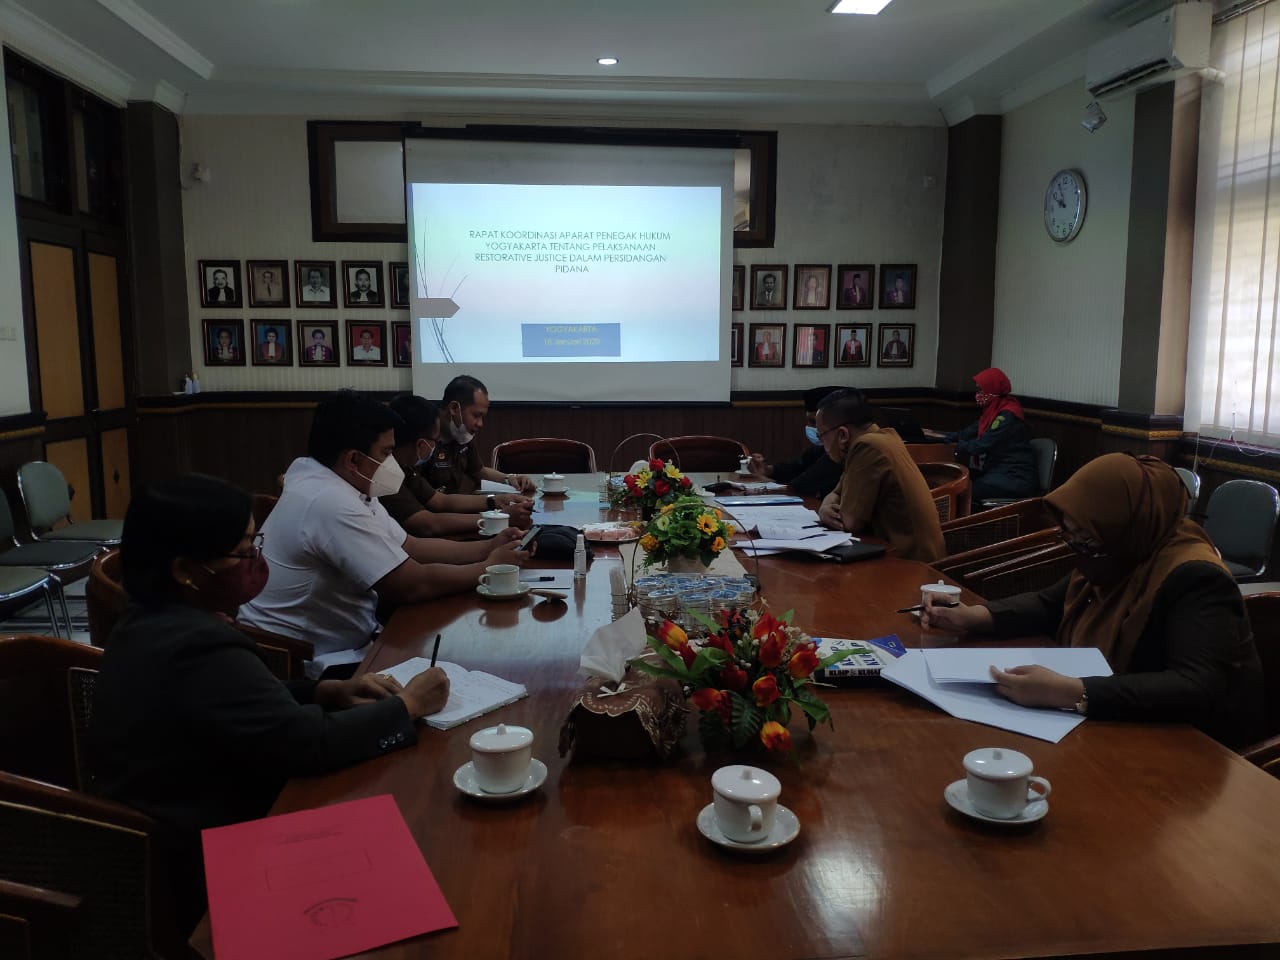 Rapat Koordinasi Aparat Penegak Hukum Yogyakarta tentang Pelaksanaan Restorative Justive dalam Persidangan Pidana di Pengadilan Negeri Yogyakarta